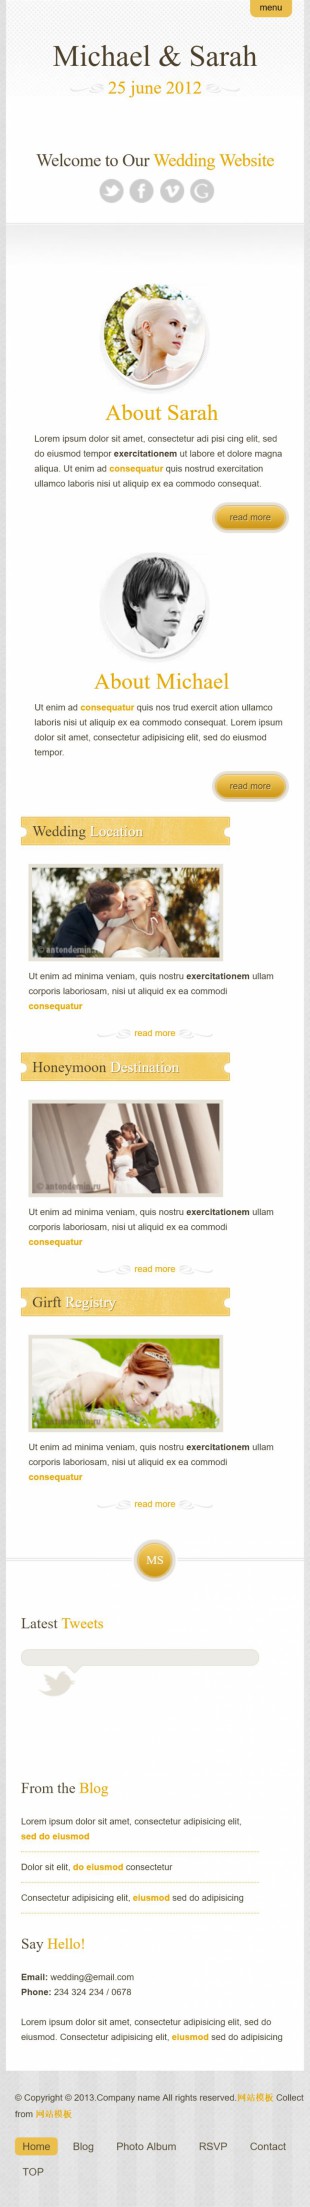 大气的交友婚嫁行业英文网站建设模板手机图片